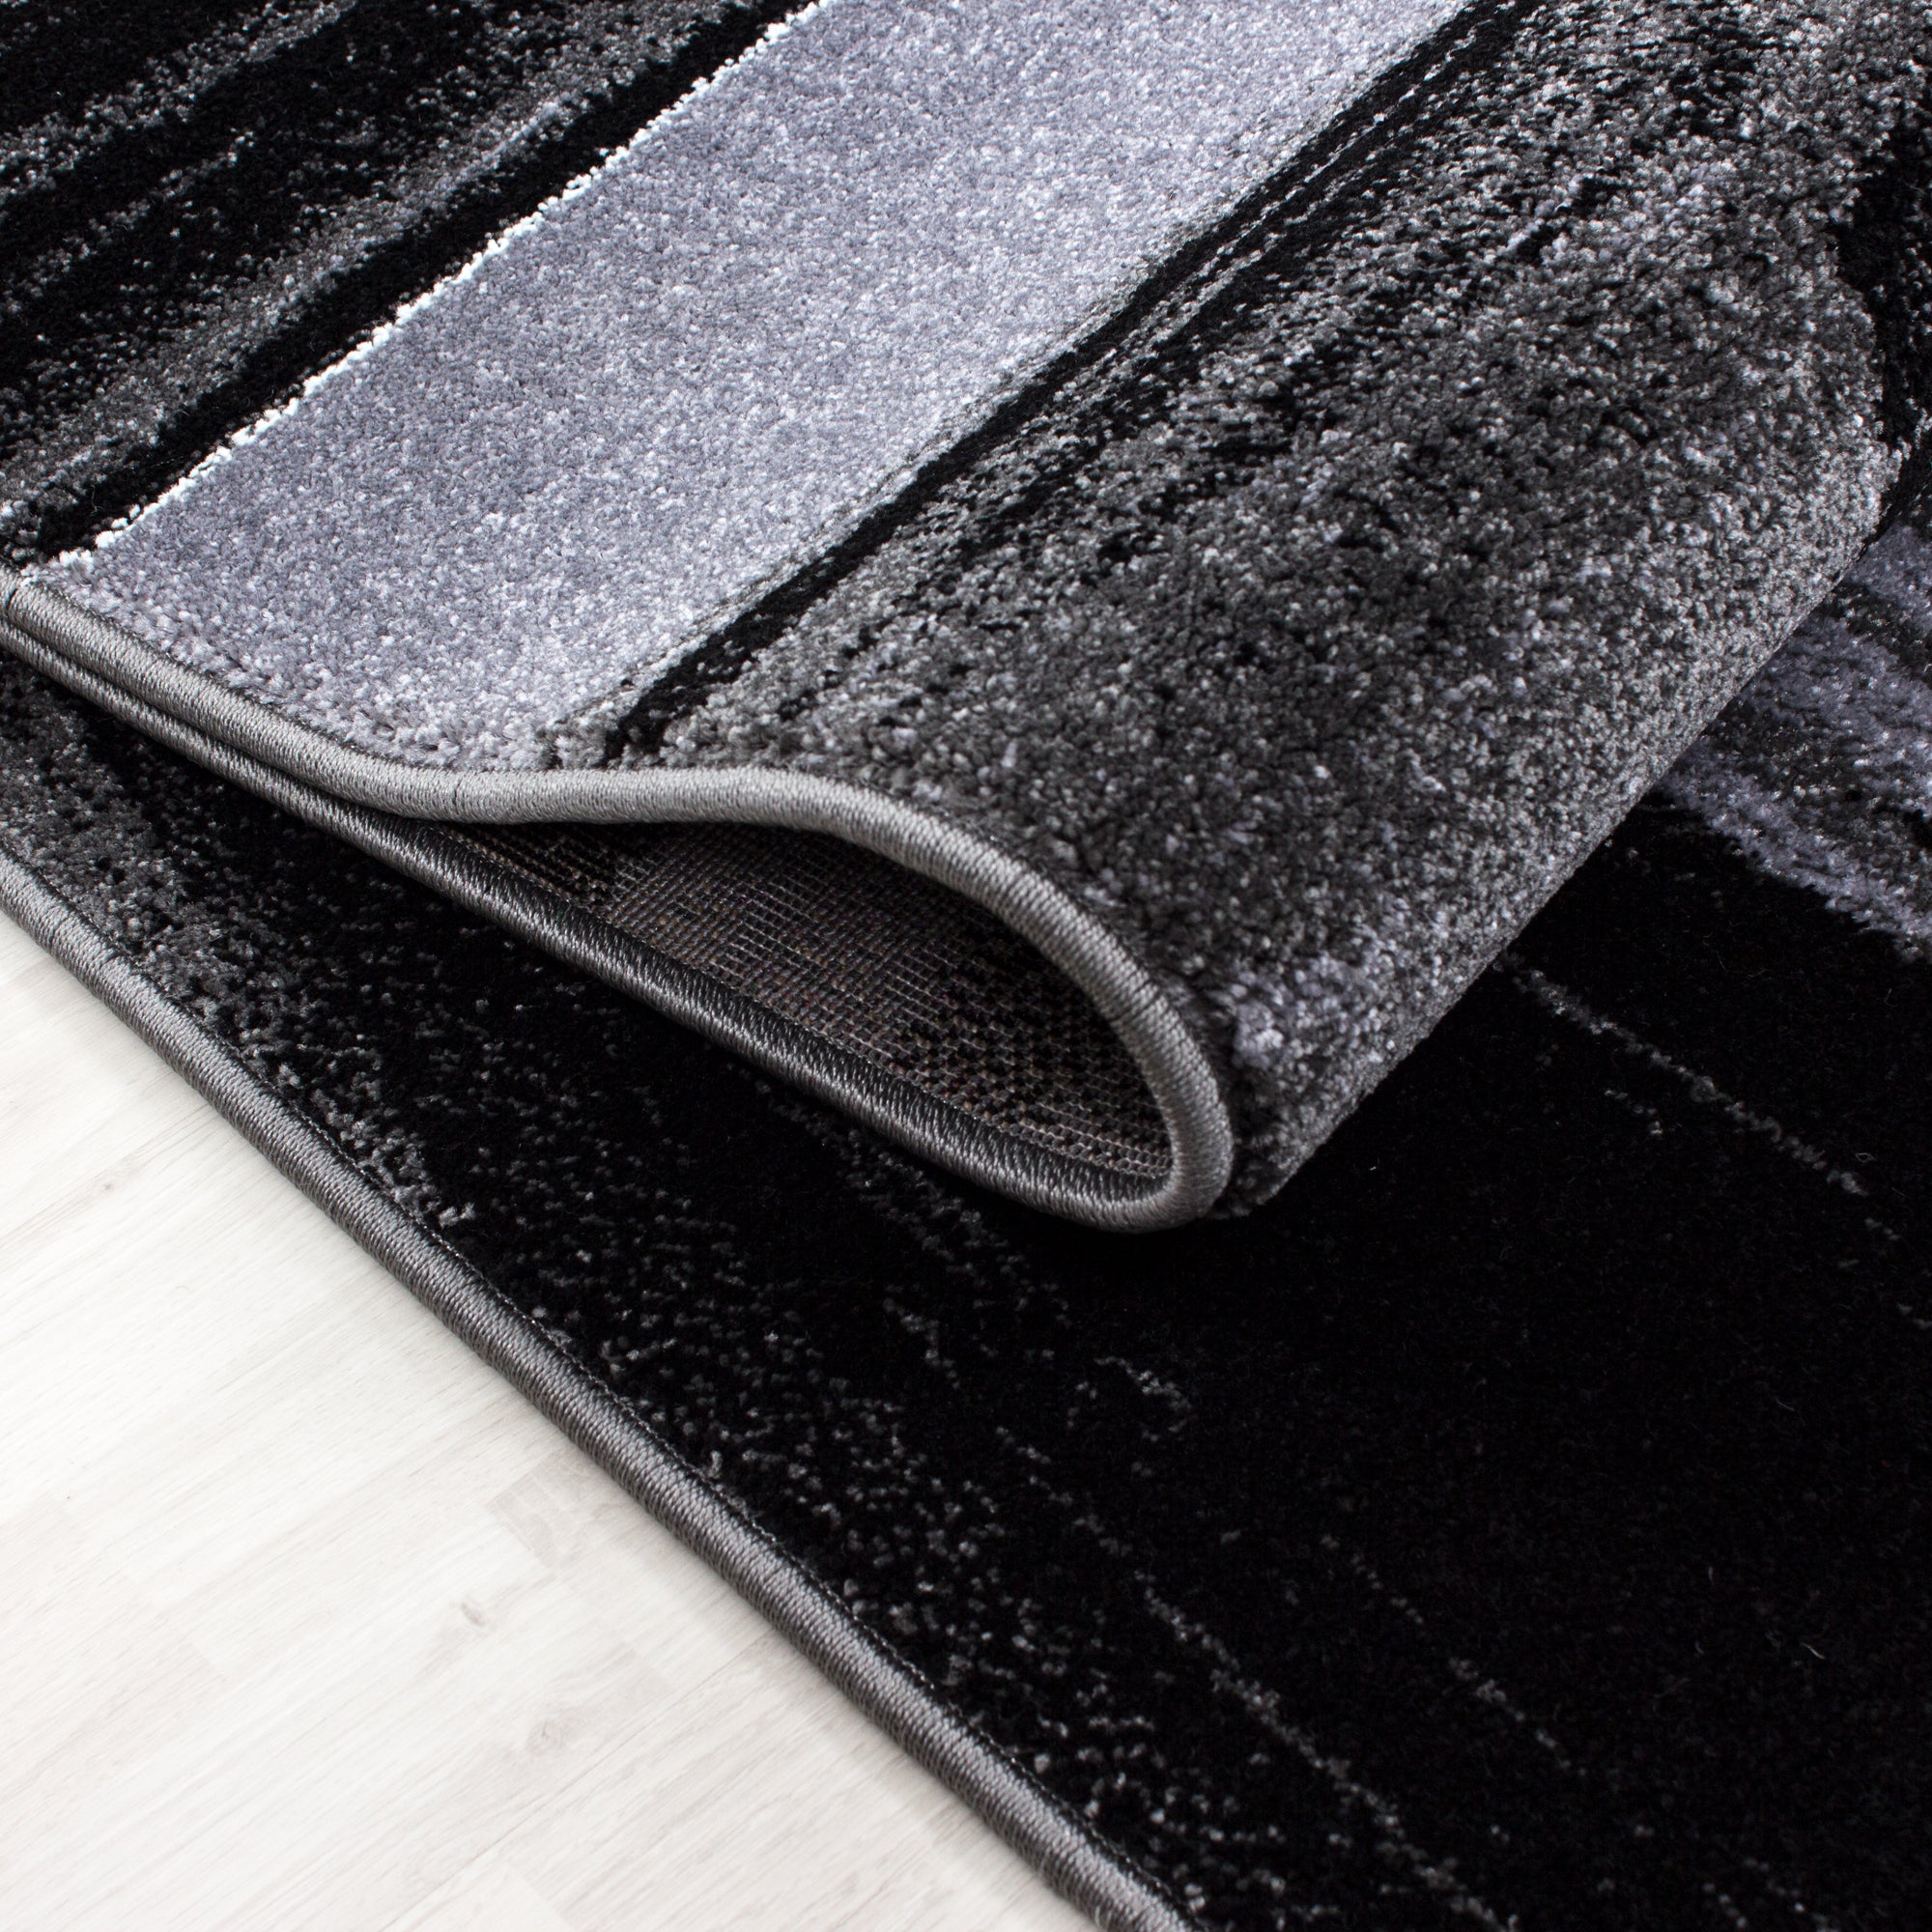 Ensemble de tapis à poils ras, bordure de lit, carrelage, design gris noir chiné